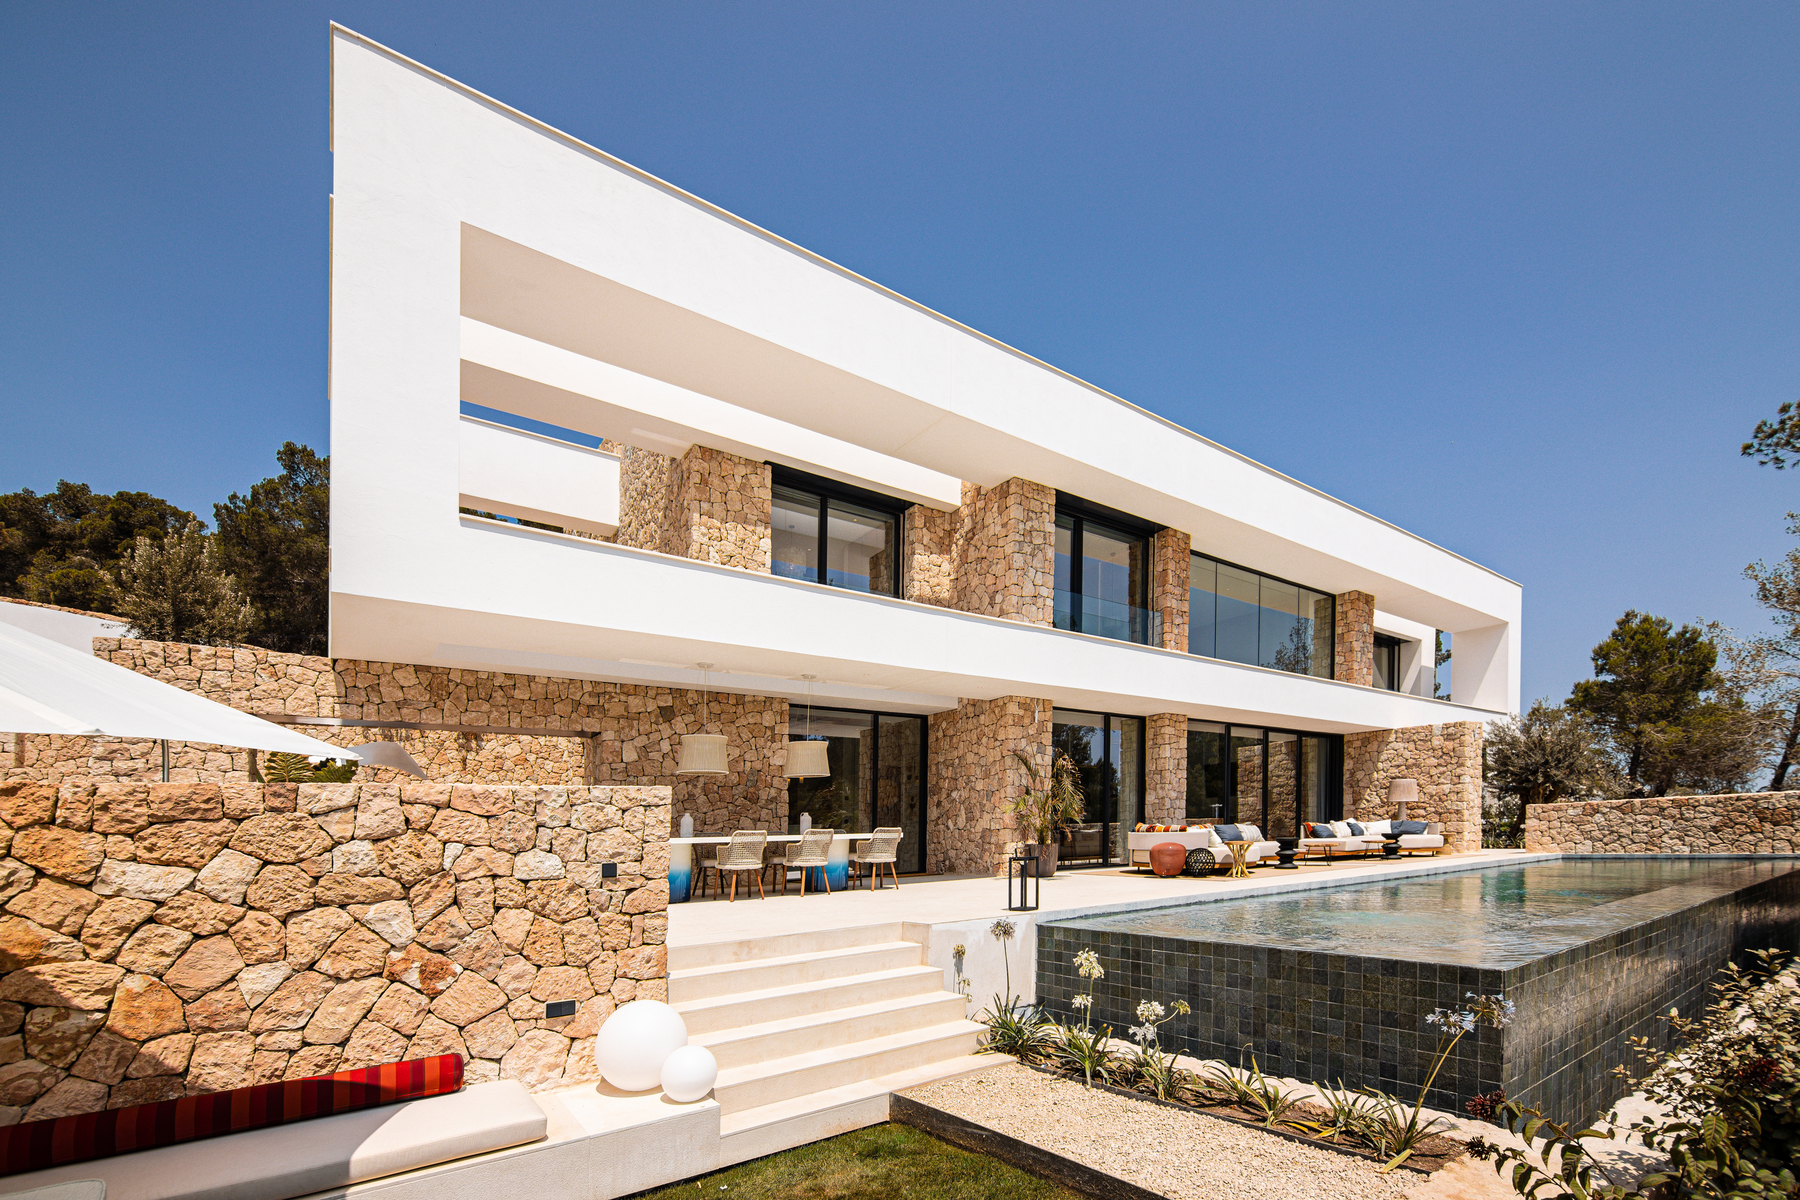 Projekt von 20 Luxusvillen in Roca Llisa in der Nähe des Golfplatzes von Ibiza